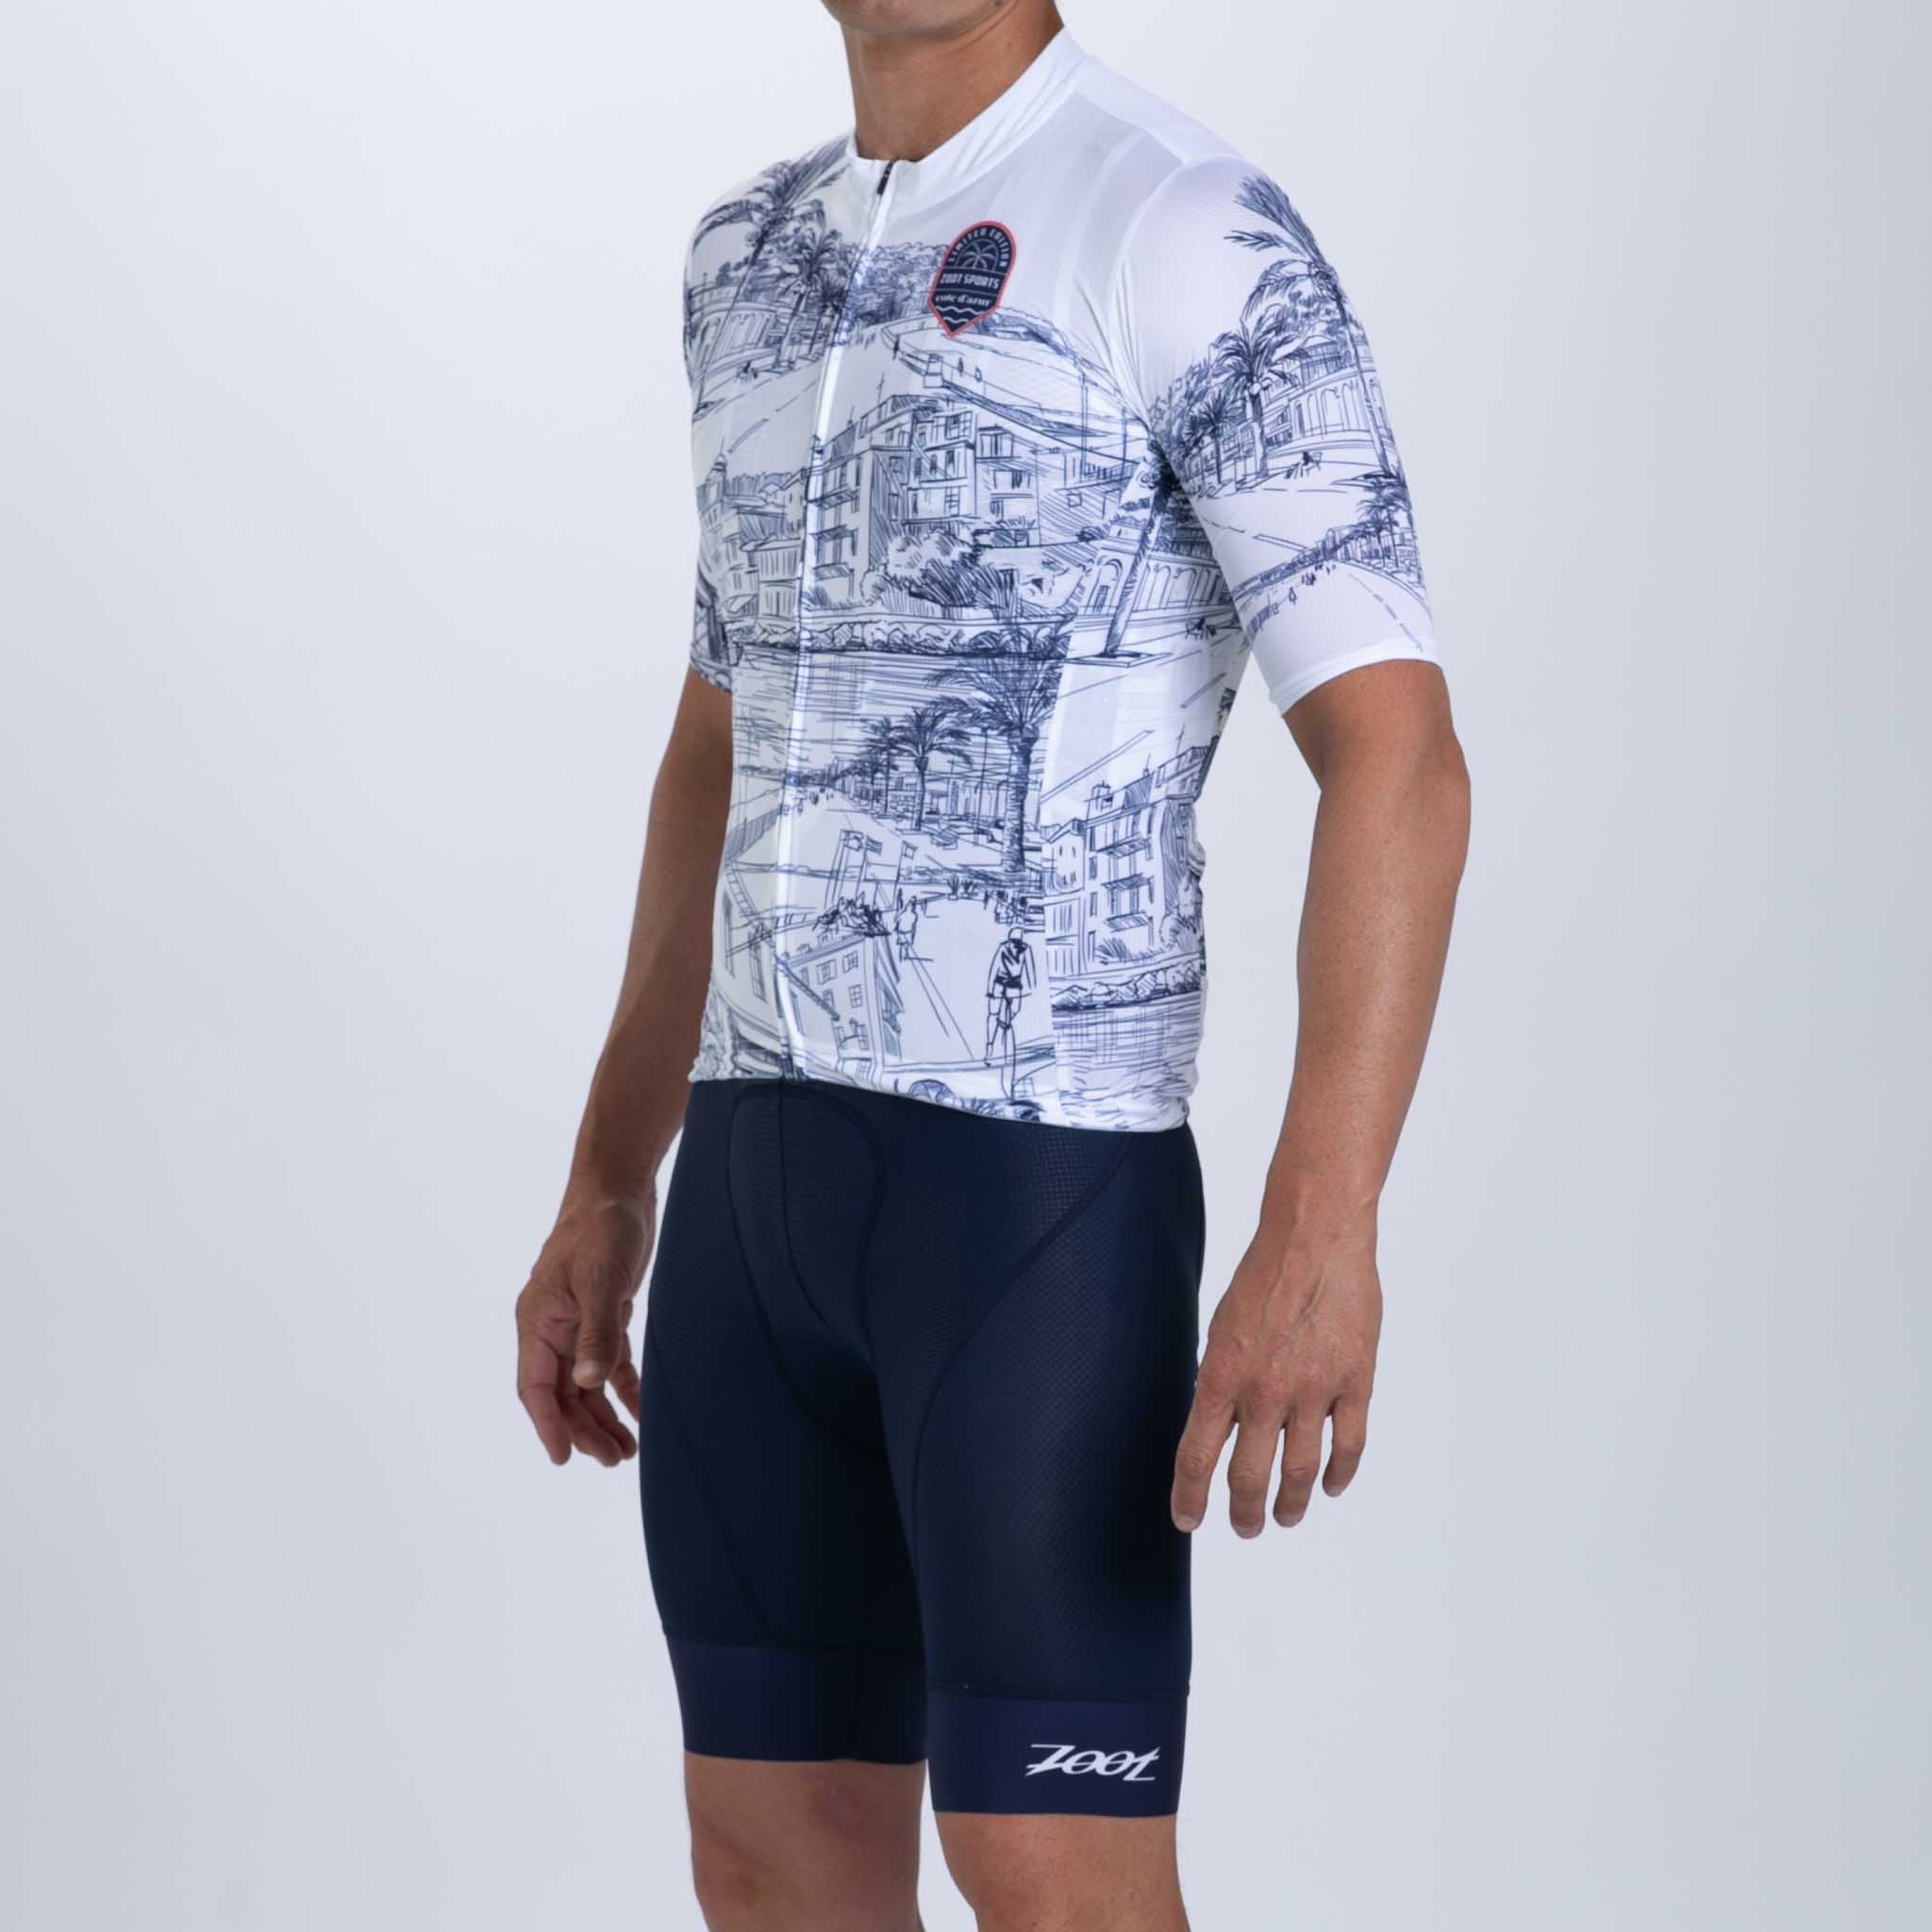 Men's Ltd Cycle Aero Jersey - Cote d'Azur